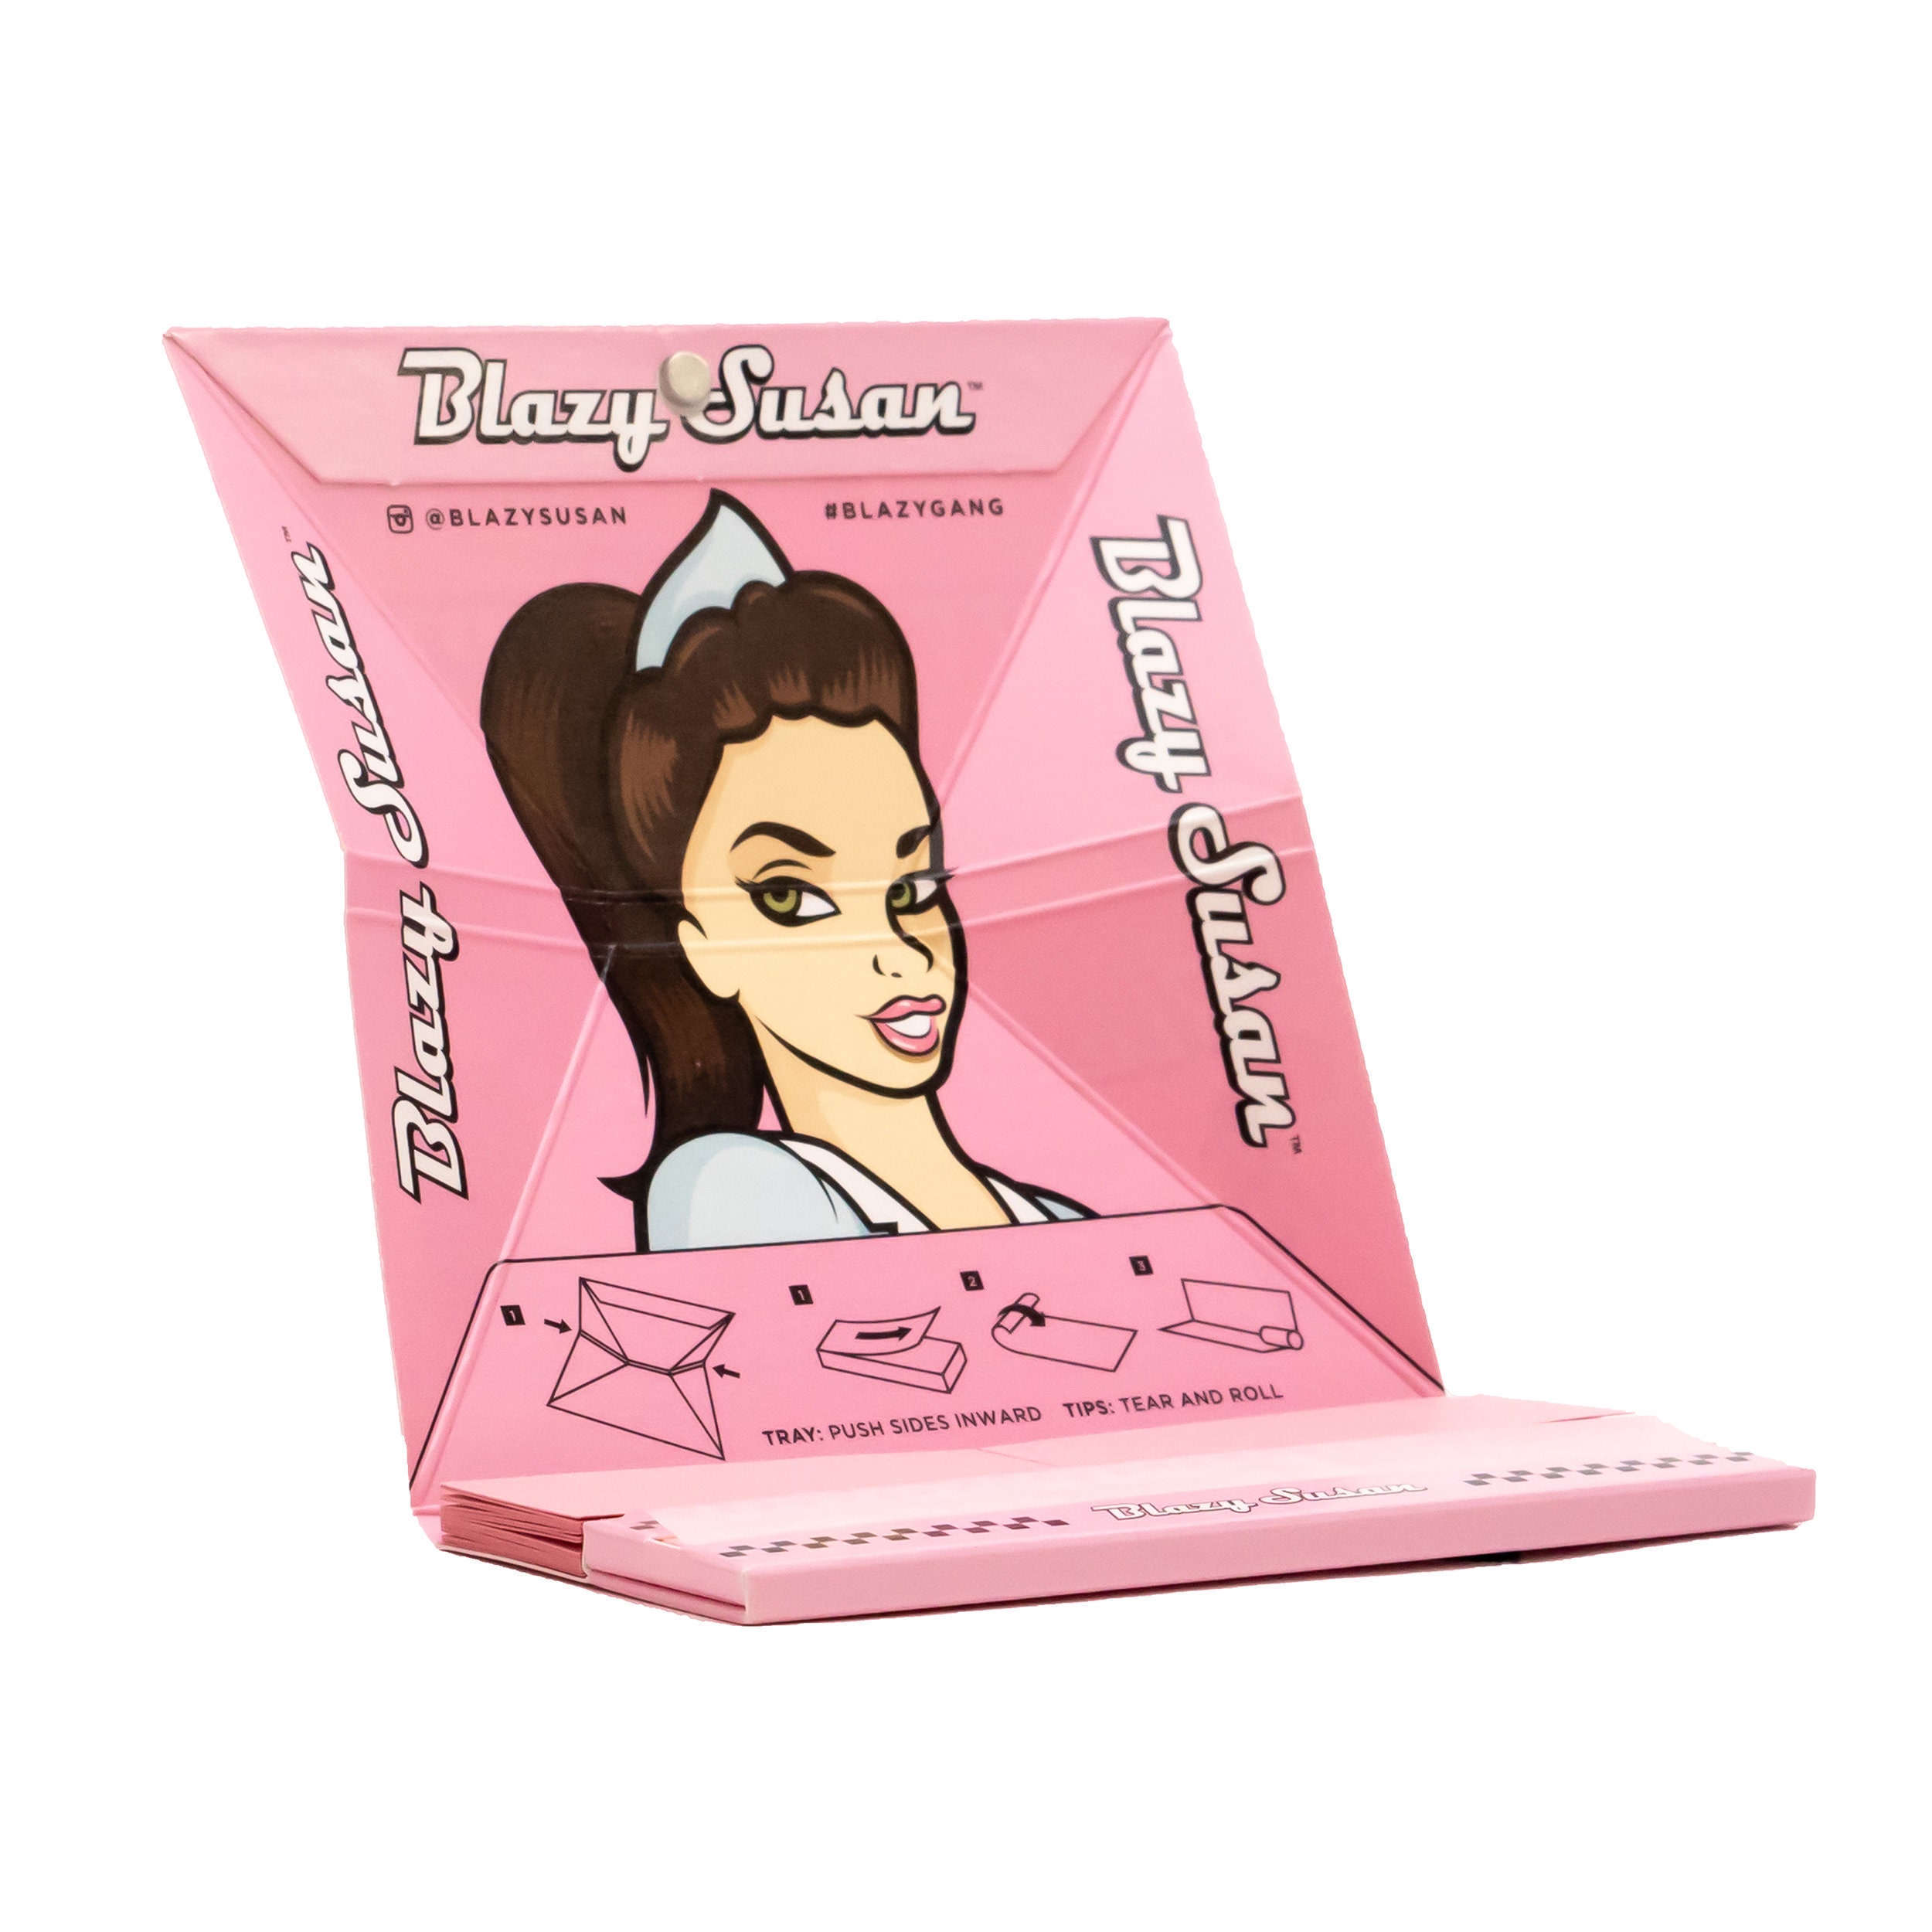  Blazy Puff Pack, Paquete de papel de liar y conos rosados, Vegano y de combustión suave